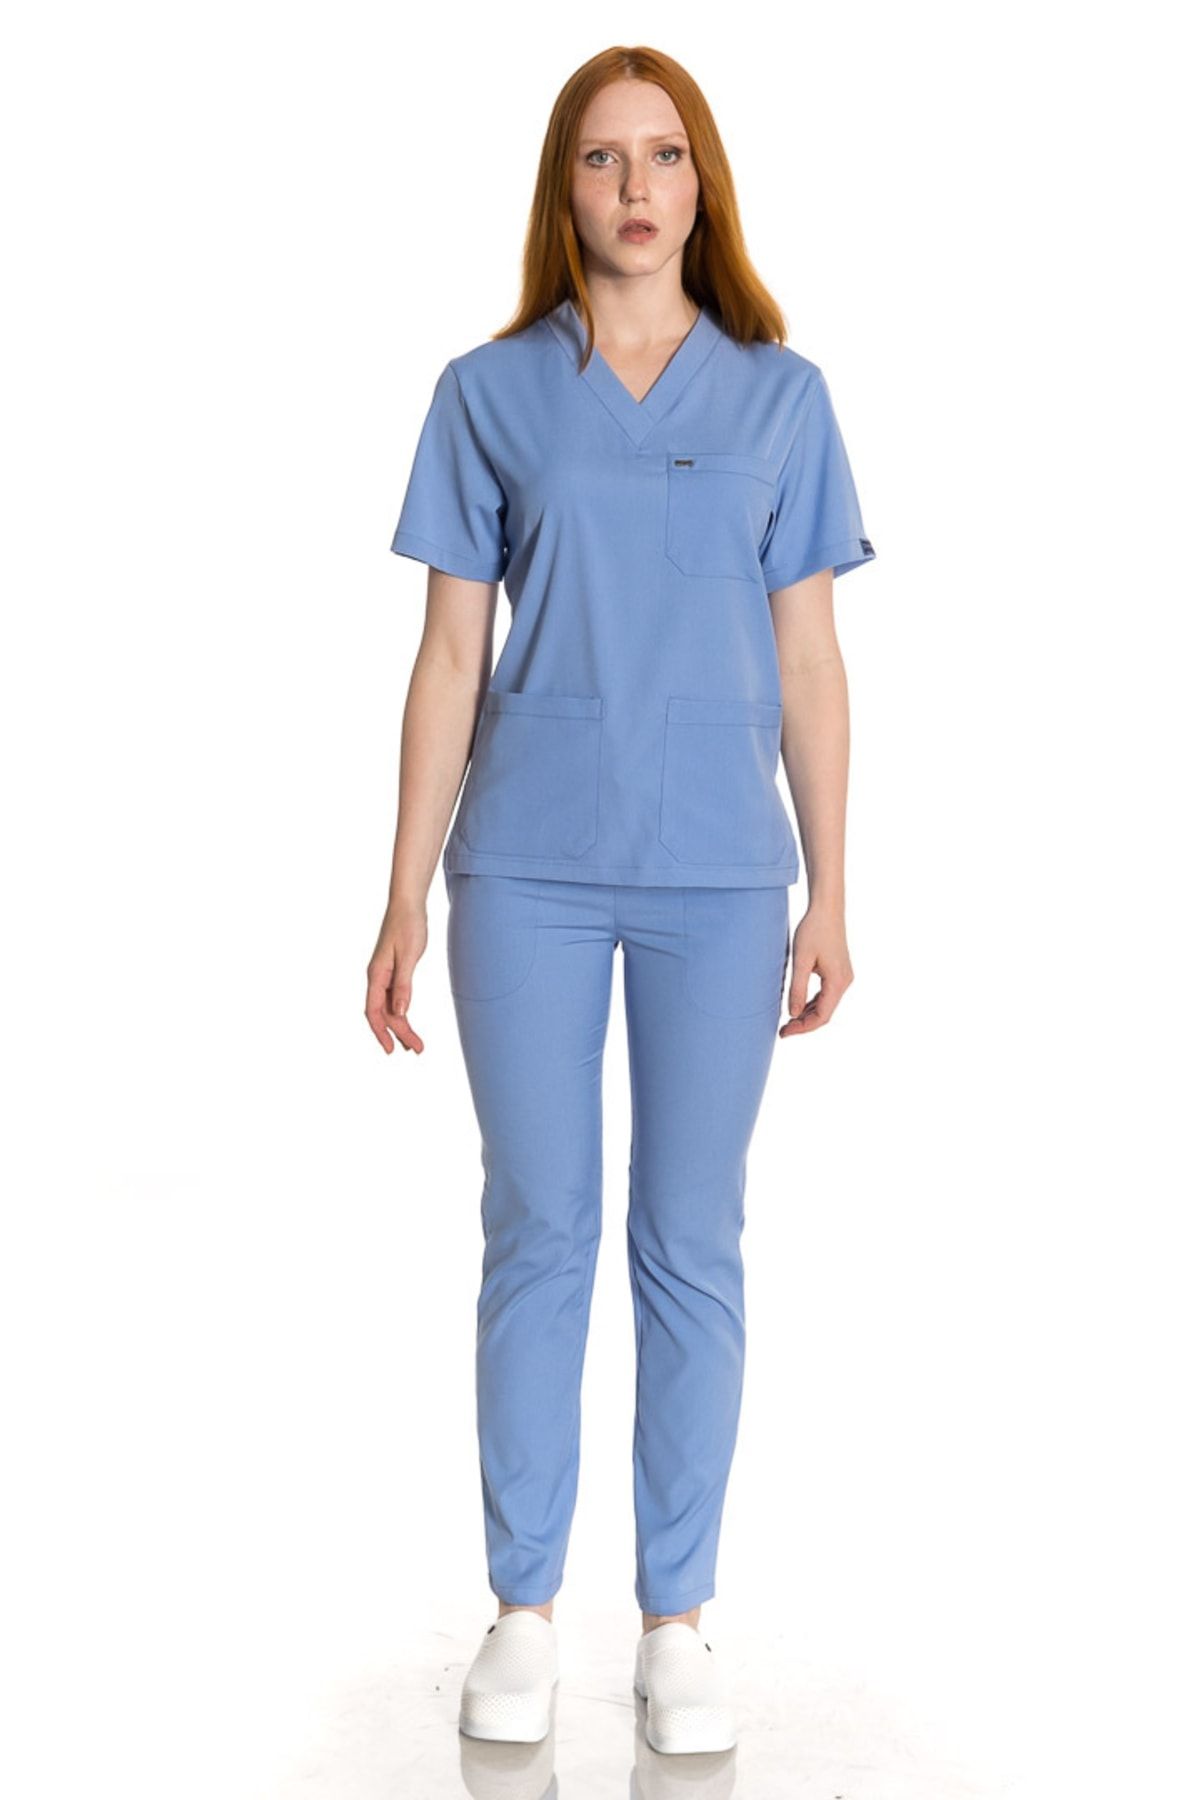 TIPMOD Unisex Yarasa Kol Likralı Doktor / Hemşire Forması Koyu Mavi